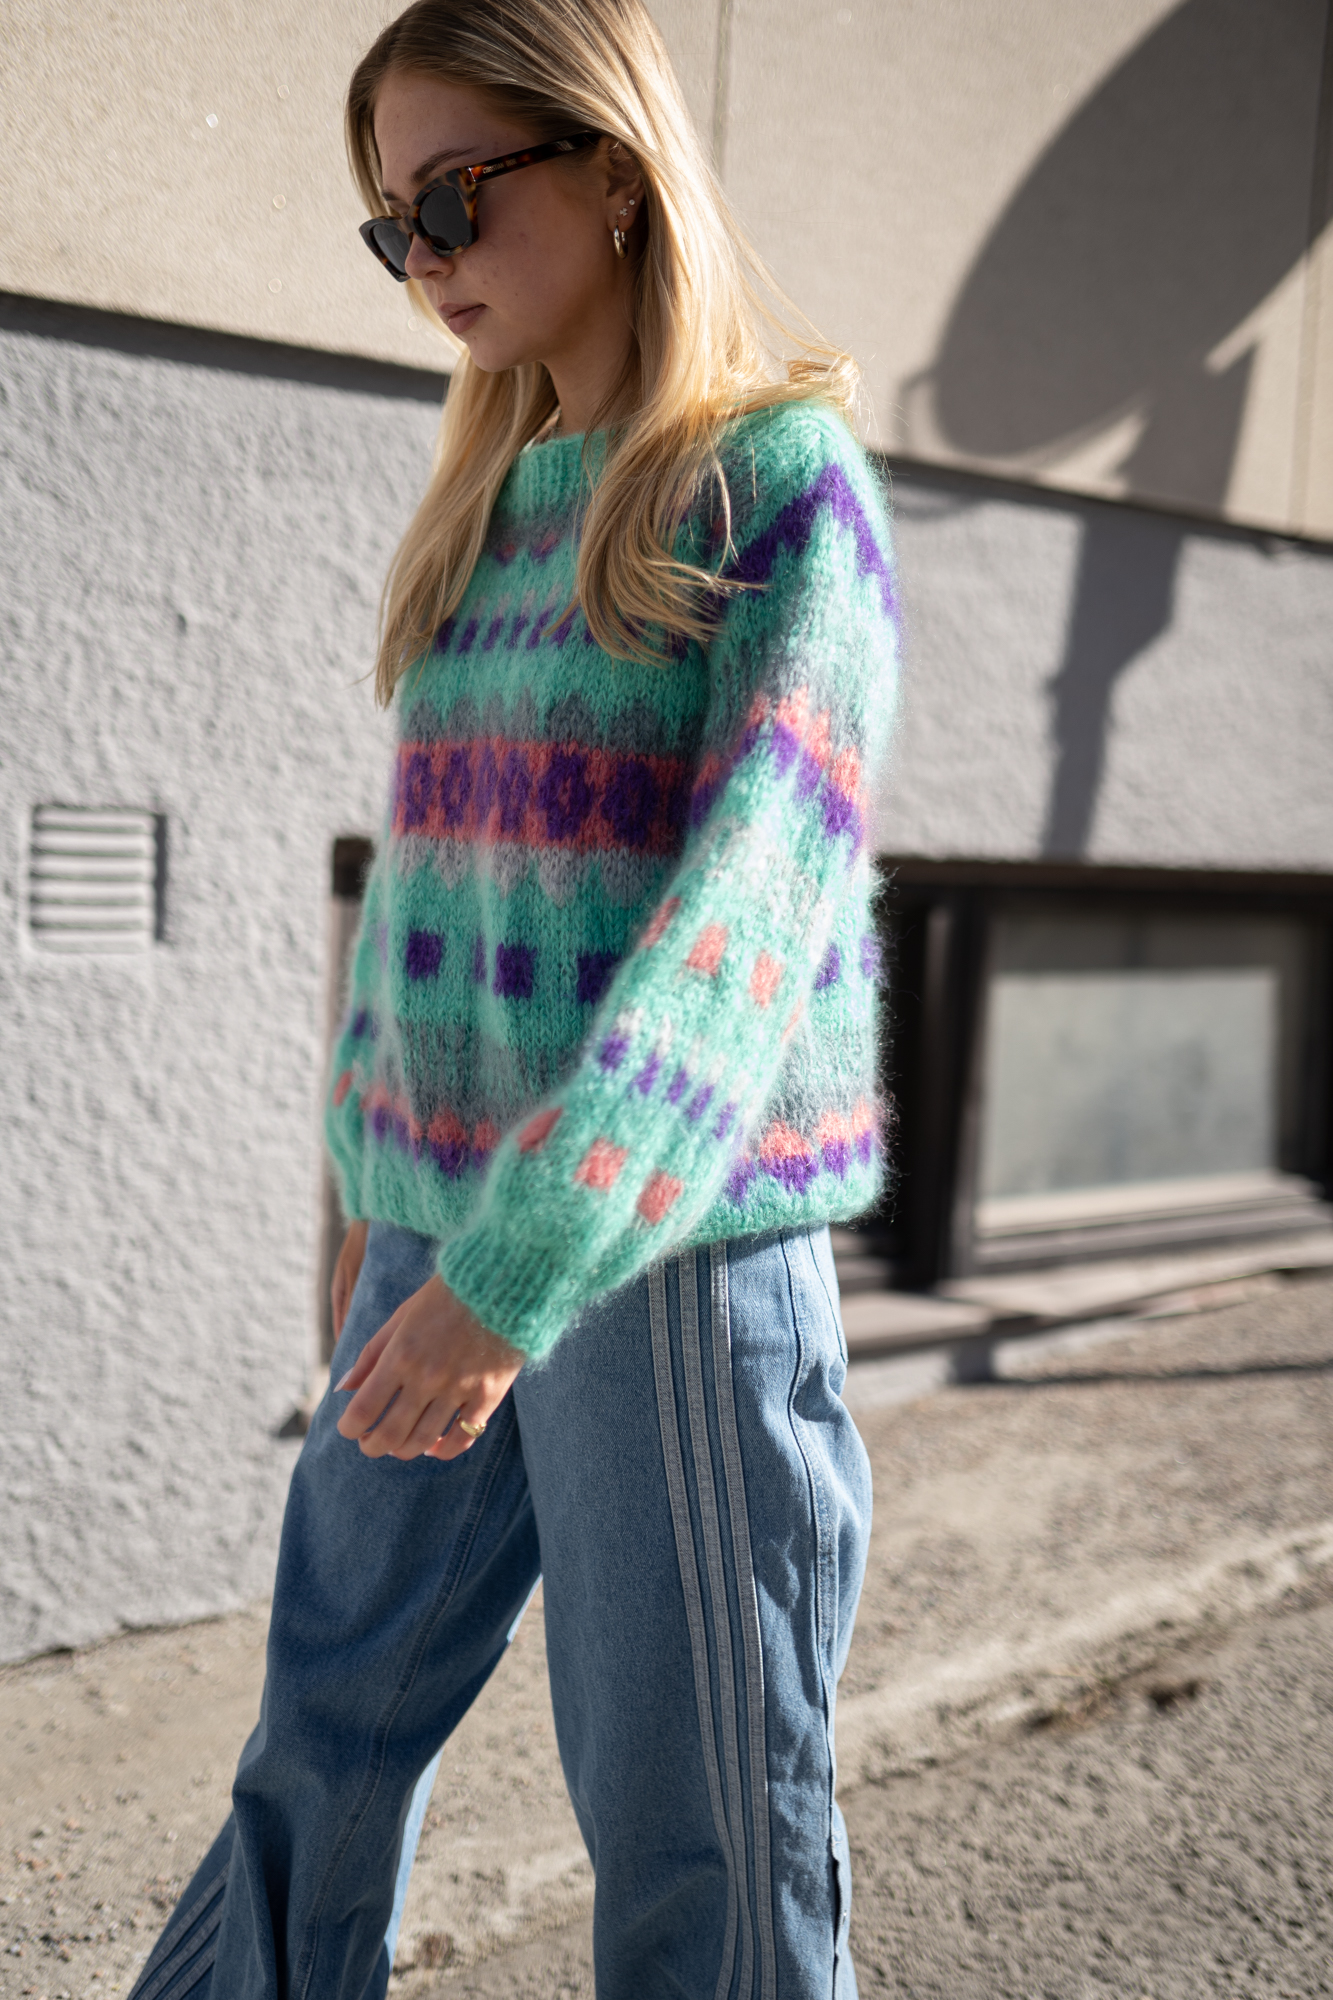 mohair sweater 80s inspired knitting pattern women 